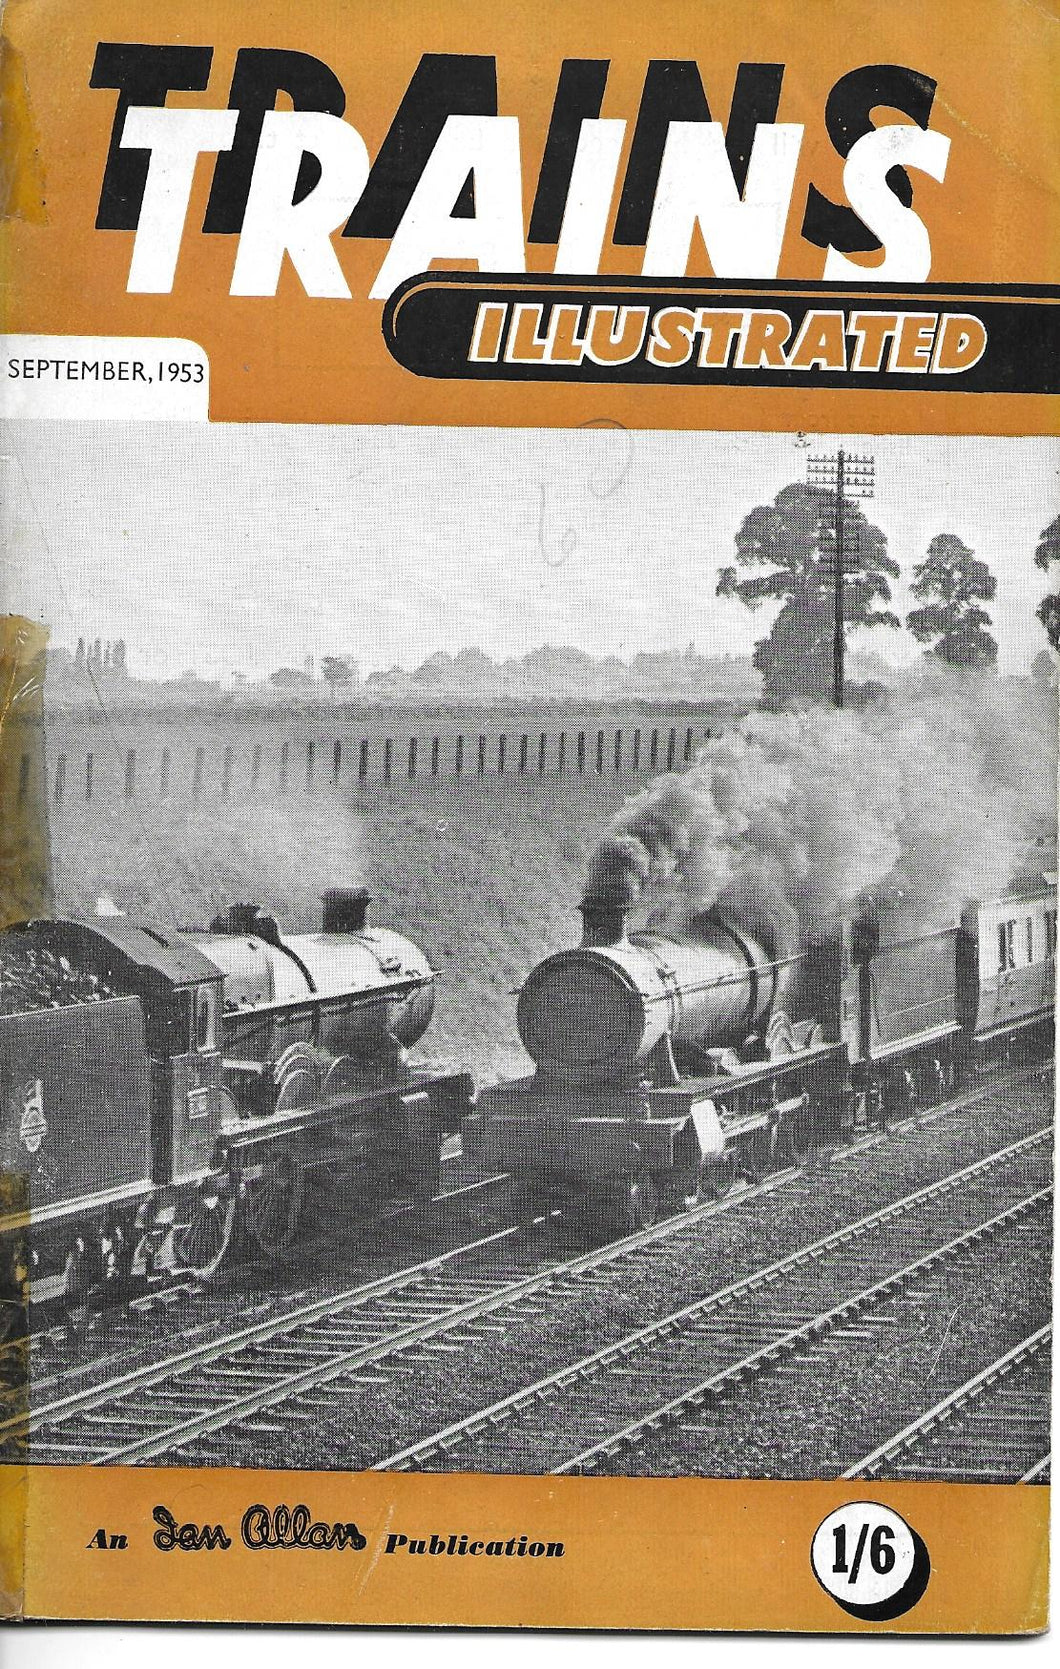 Trains Illustrated, Ian Allan, September 1953, Vol VI No 9